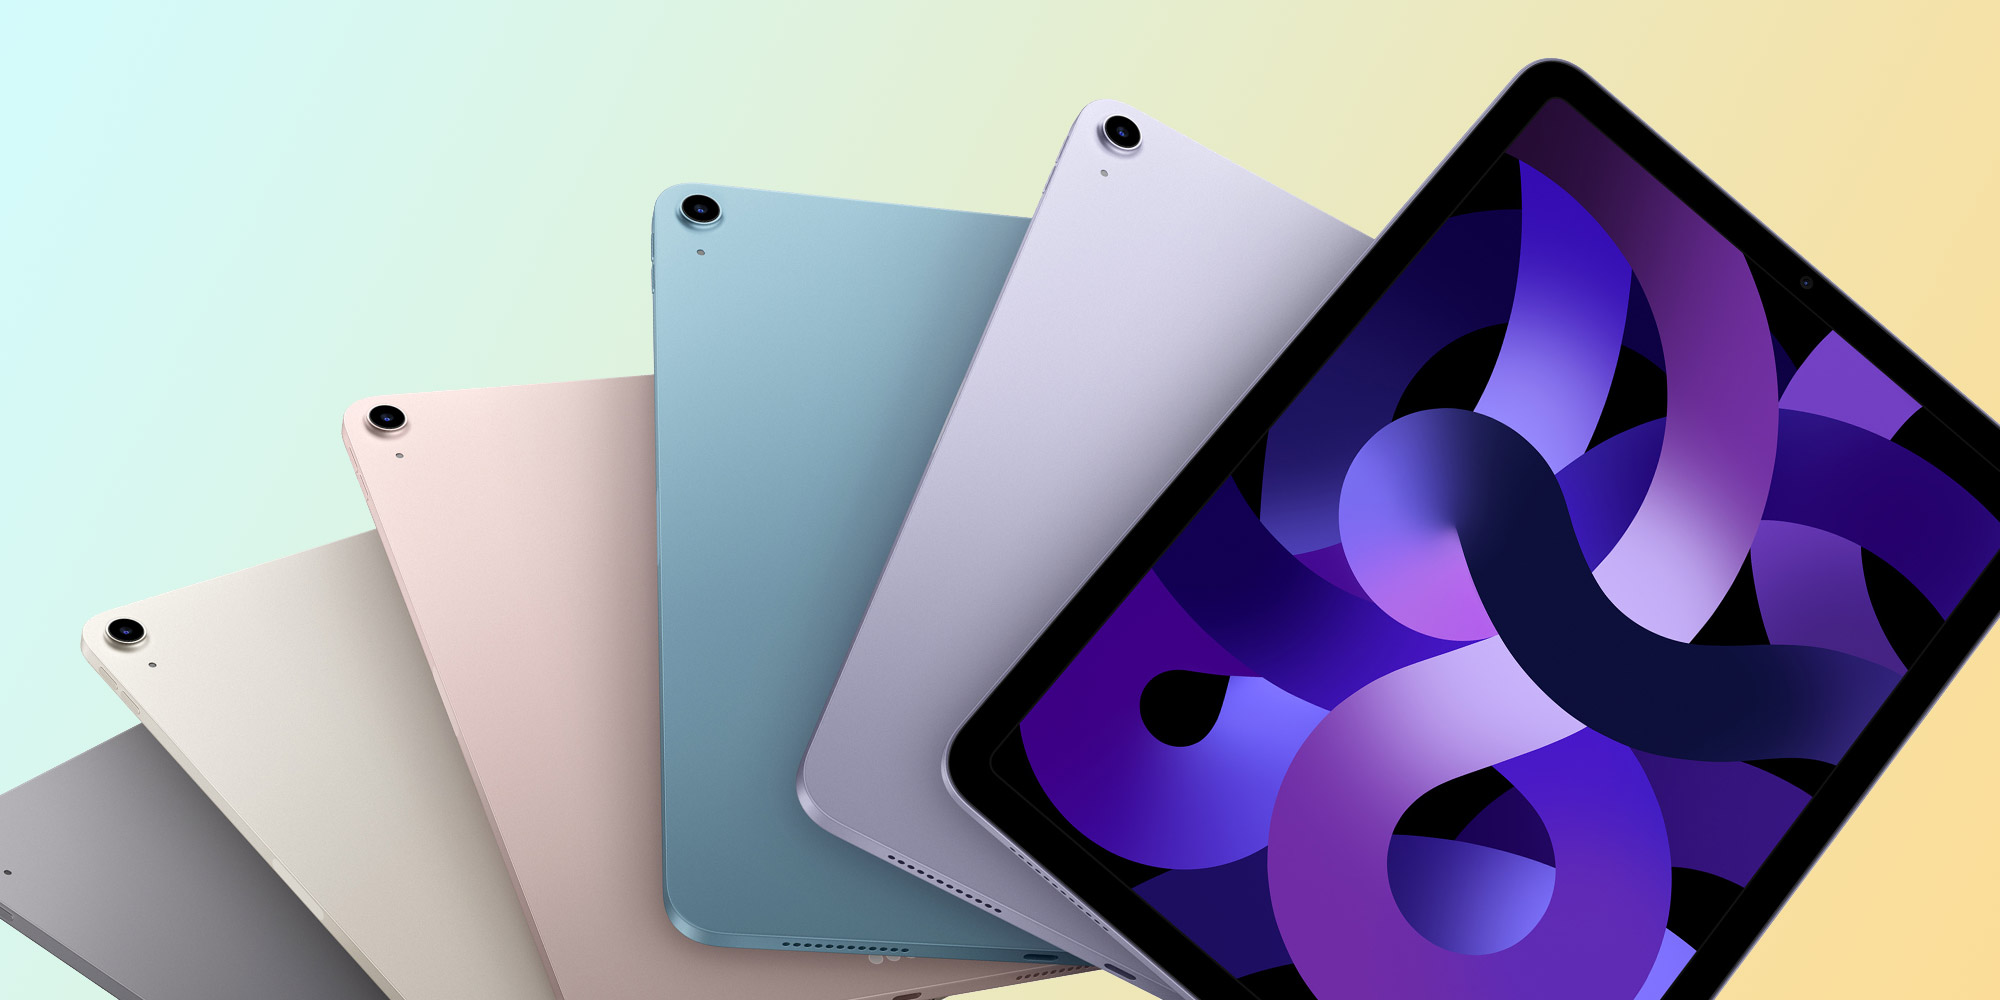 Oczekuje się, że Apple zaprezentuje nowe modele iPadów w przyszłym tygodniu